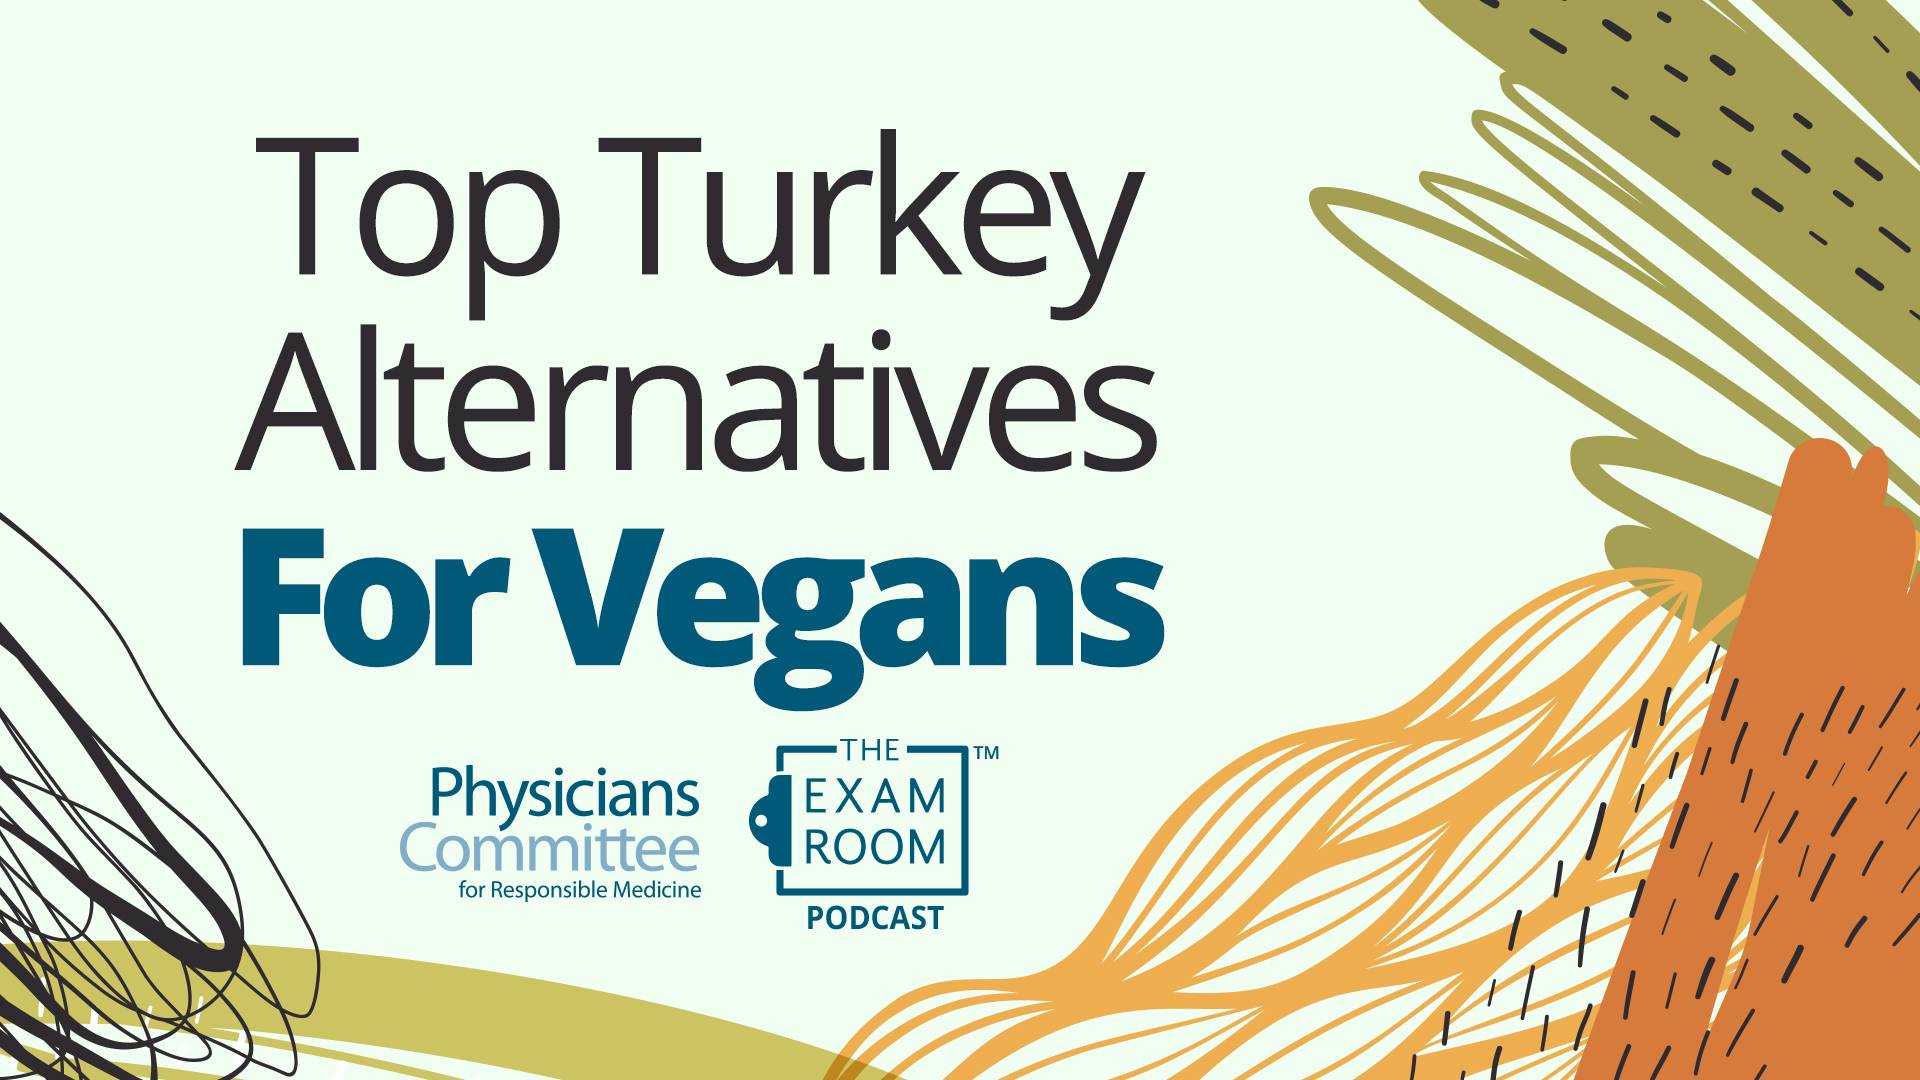 Top Turkey Alternatives